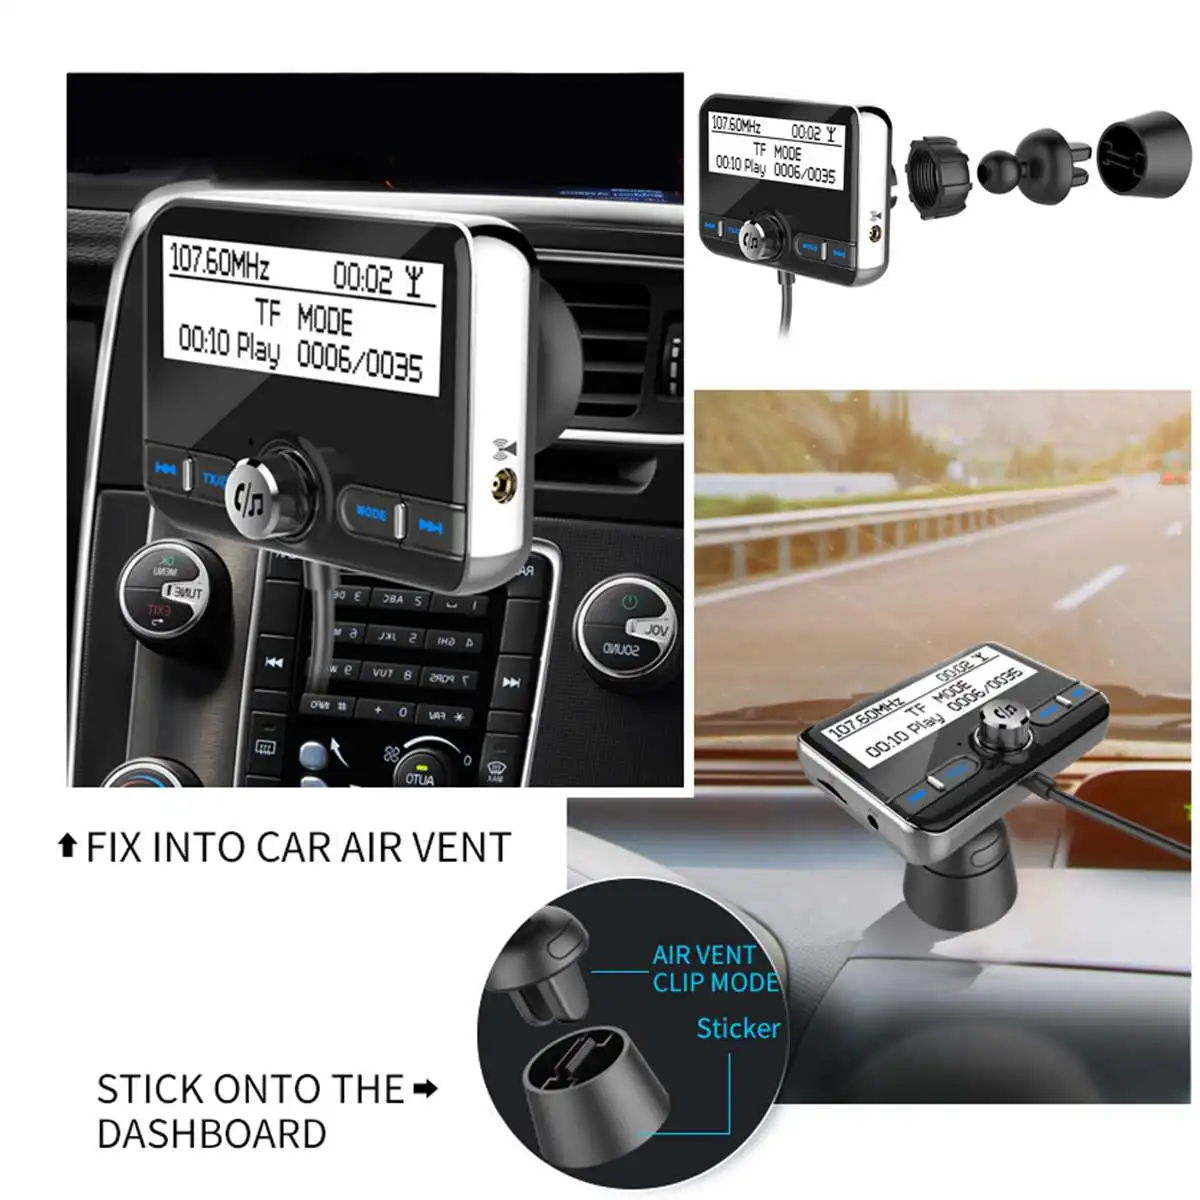 Автомобильный DAB радио приемник тюнер USB адаптер bluetooth Автомобильный передатчик TF/AUX антенна ЖК-дисплей цифровой радио Громкая связь вызов